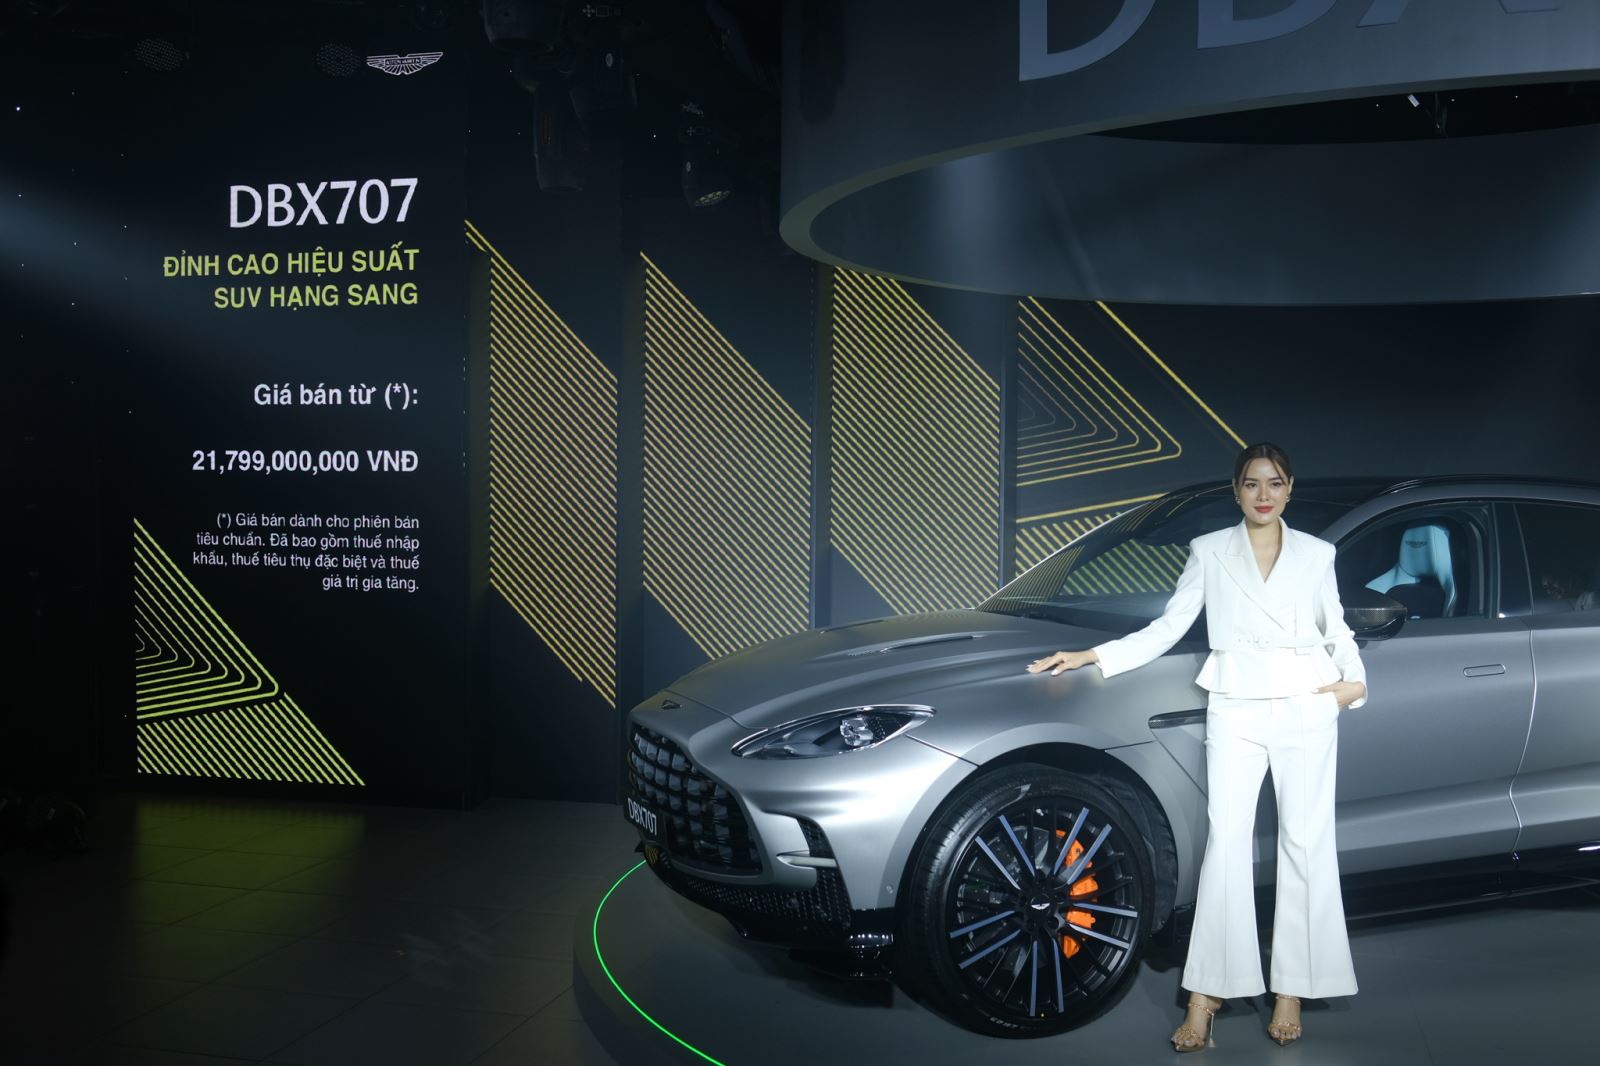 Ra mắt Aston Martin DBX707 tại Việt Nam: Giá từ 21,8 tỷ đồng, ông Đặng Lê Nguyên Vũ là khách hàng đầu tiên - Ảnh 1.